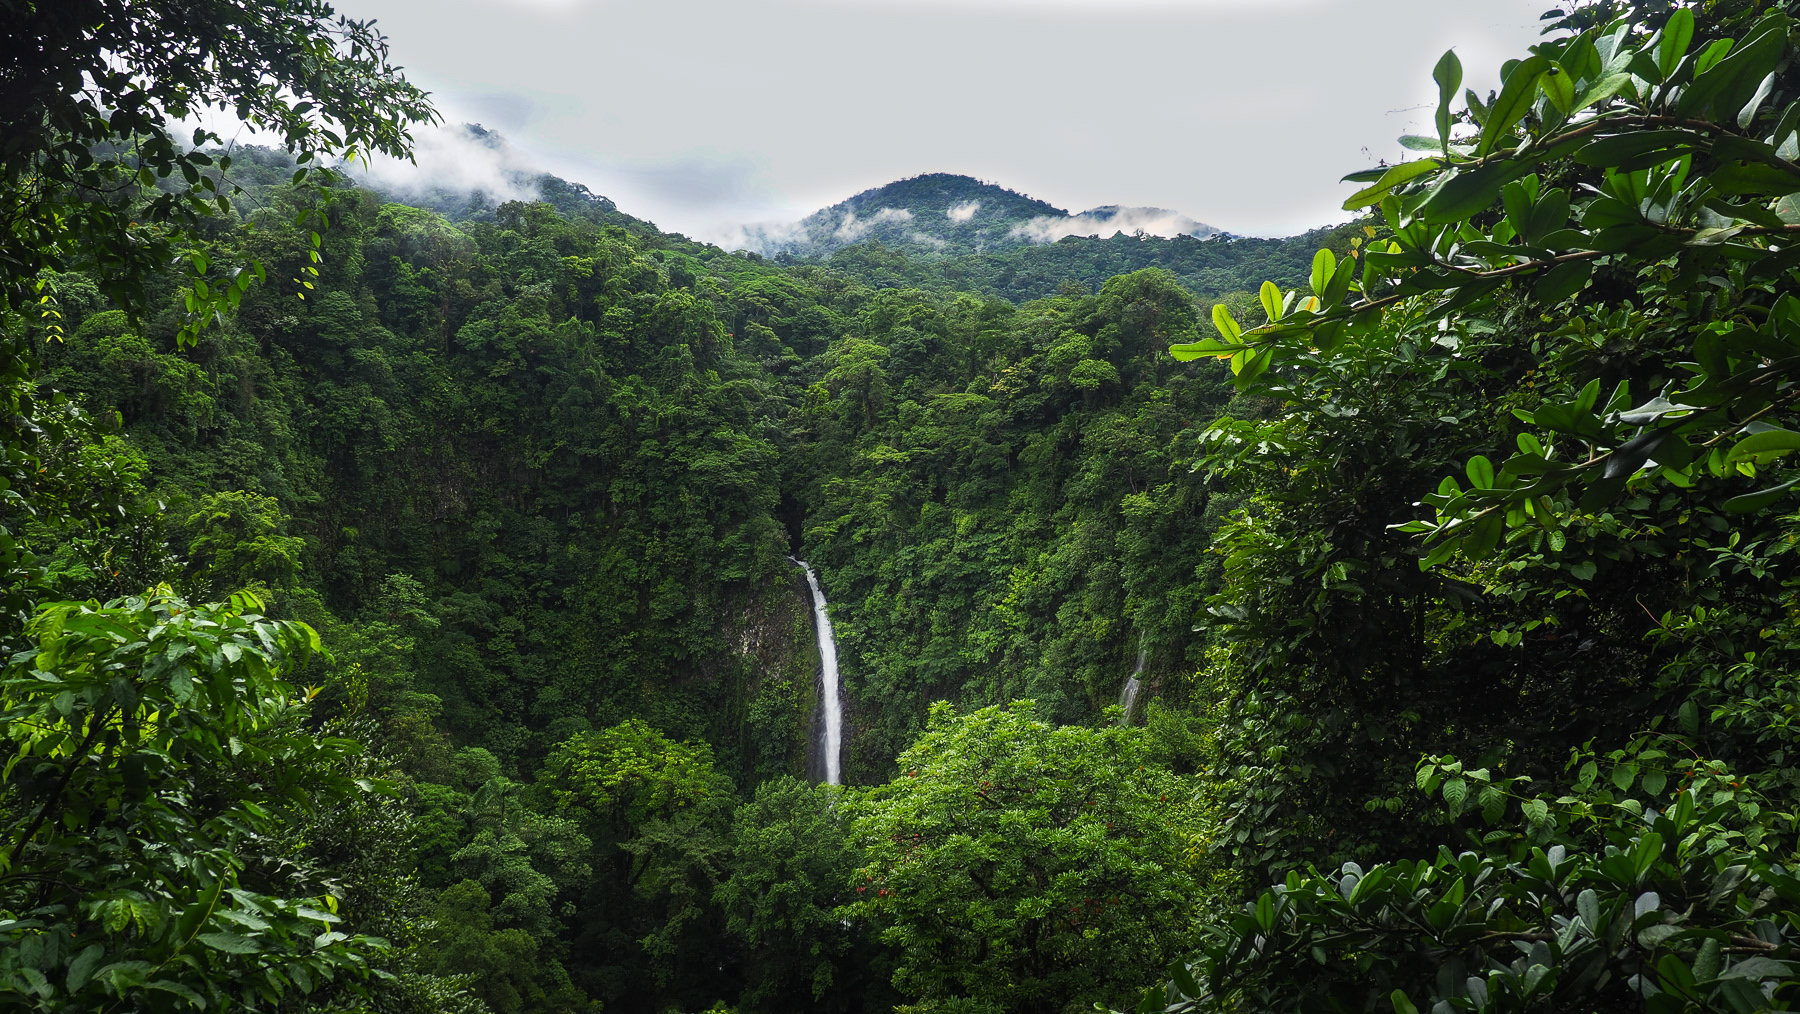 Mitten im Dschungel gelegen: der La Fortuna Wasserfall